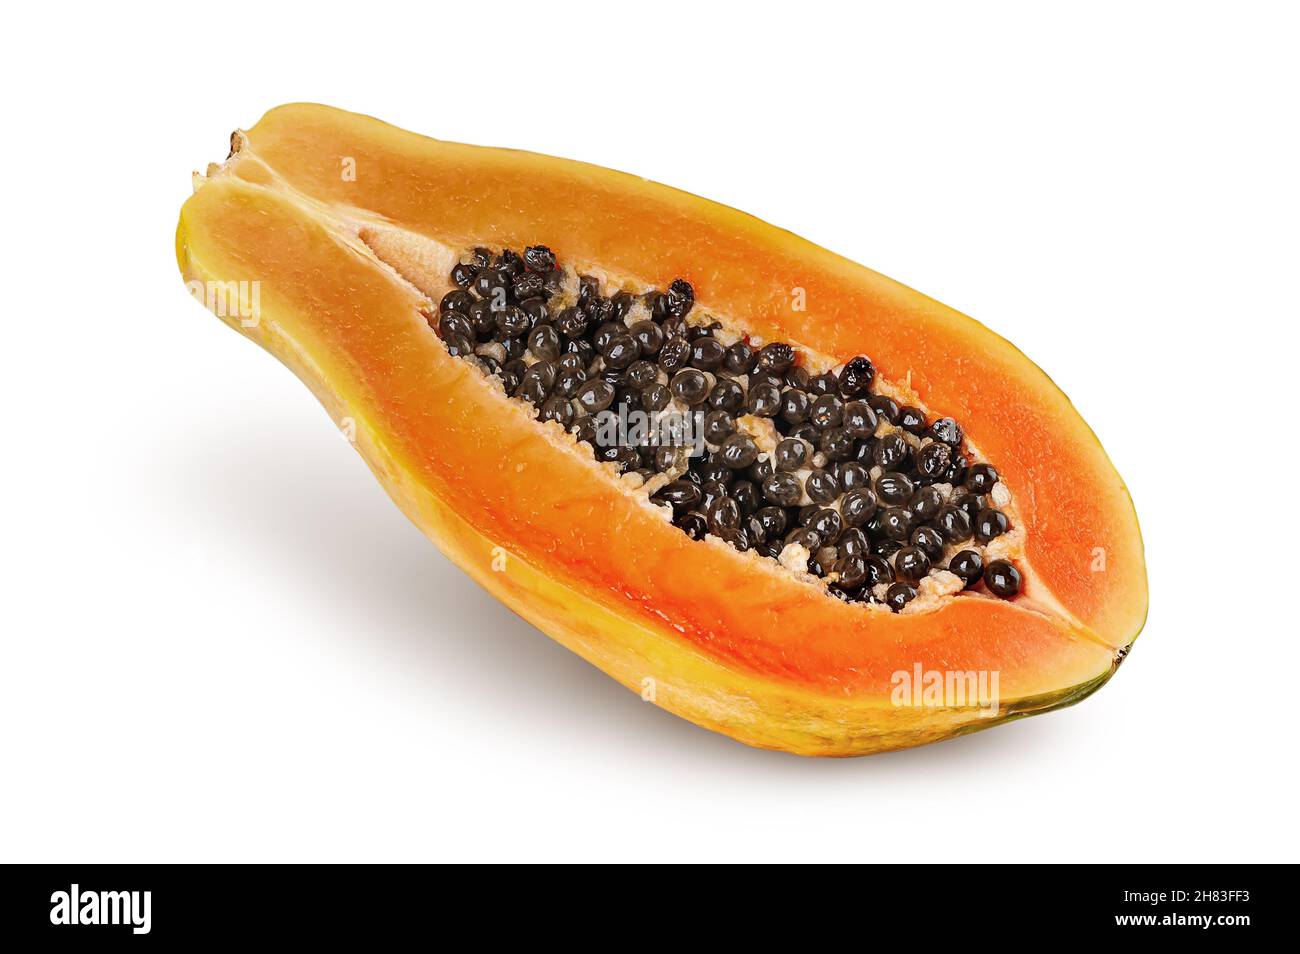 Single half ripe papaya rotated isolated on white background Stock Photo